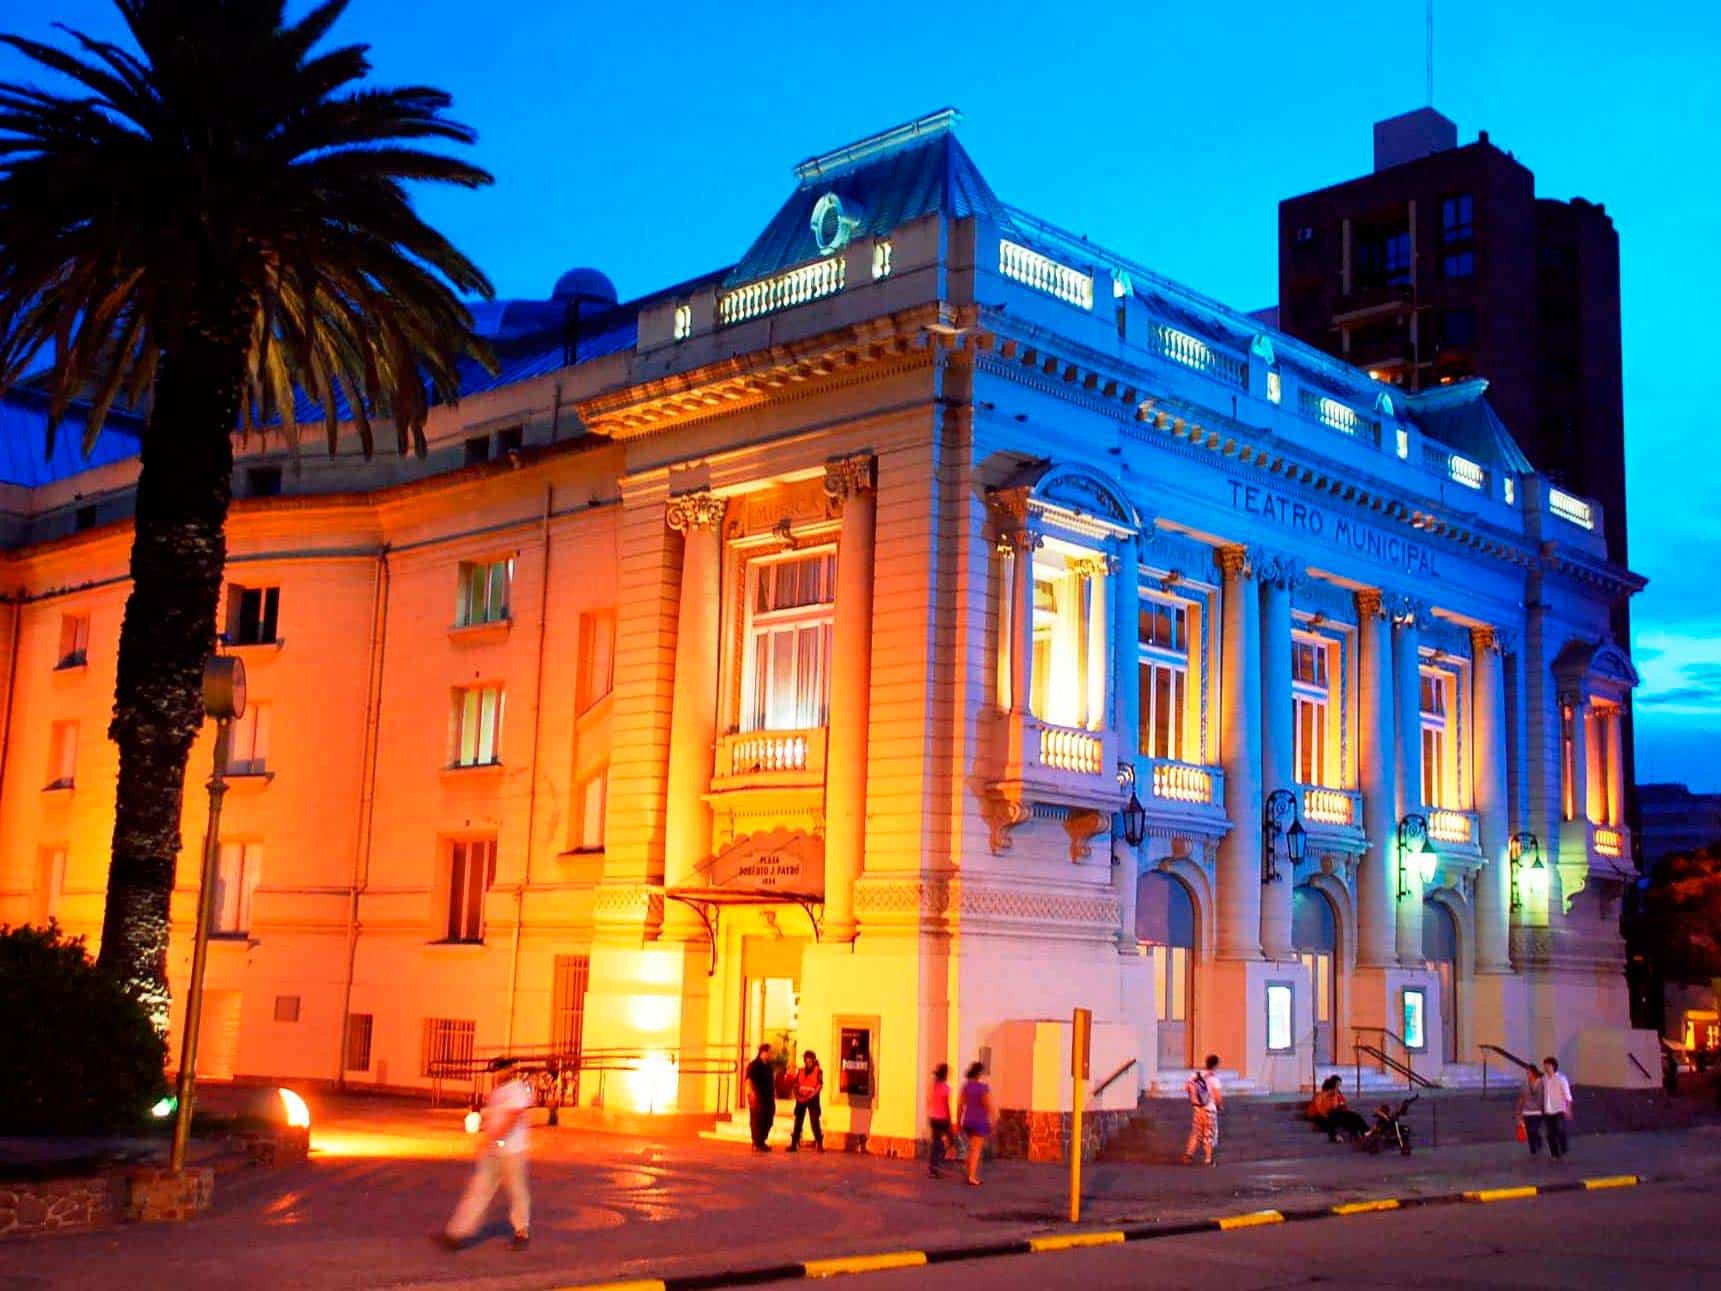 Teatro Municipal de Bahía Blanca - Tripin Argentina